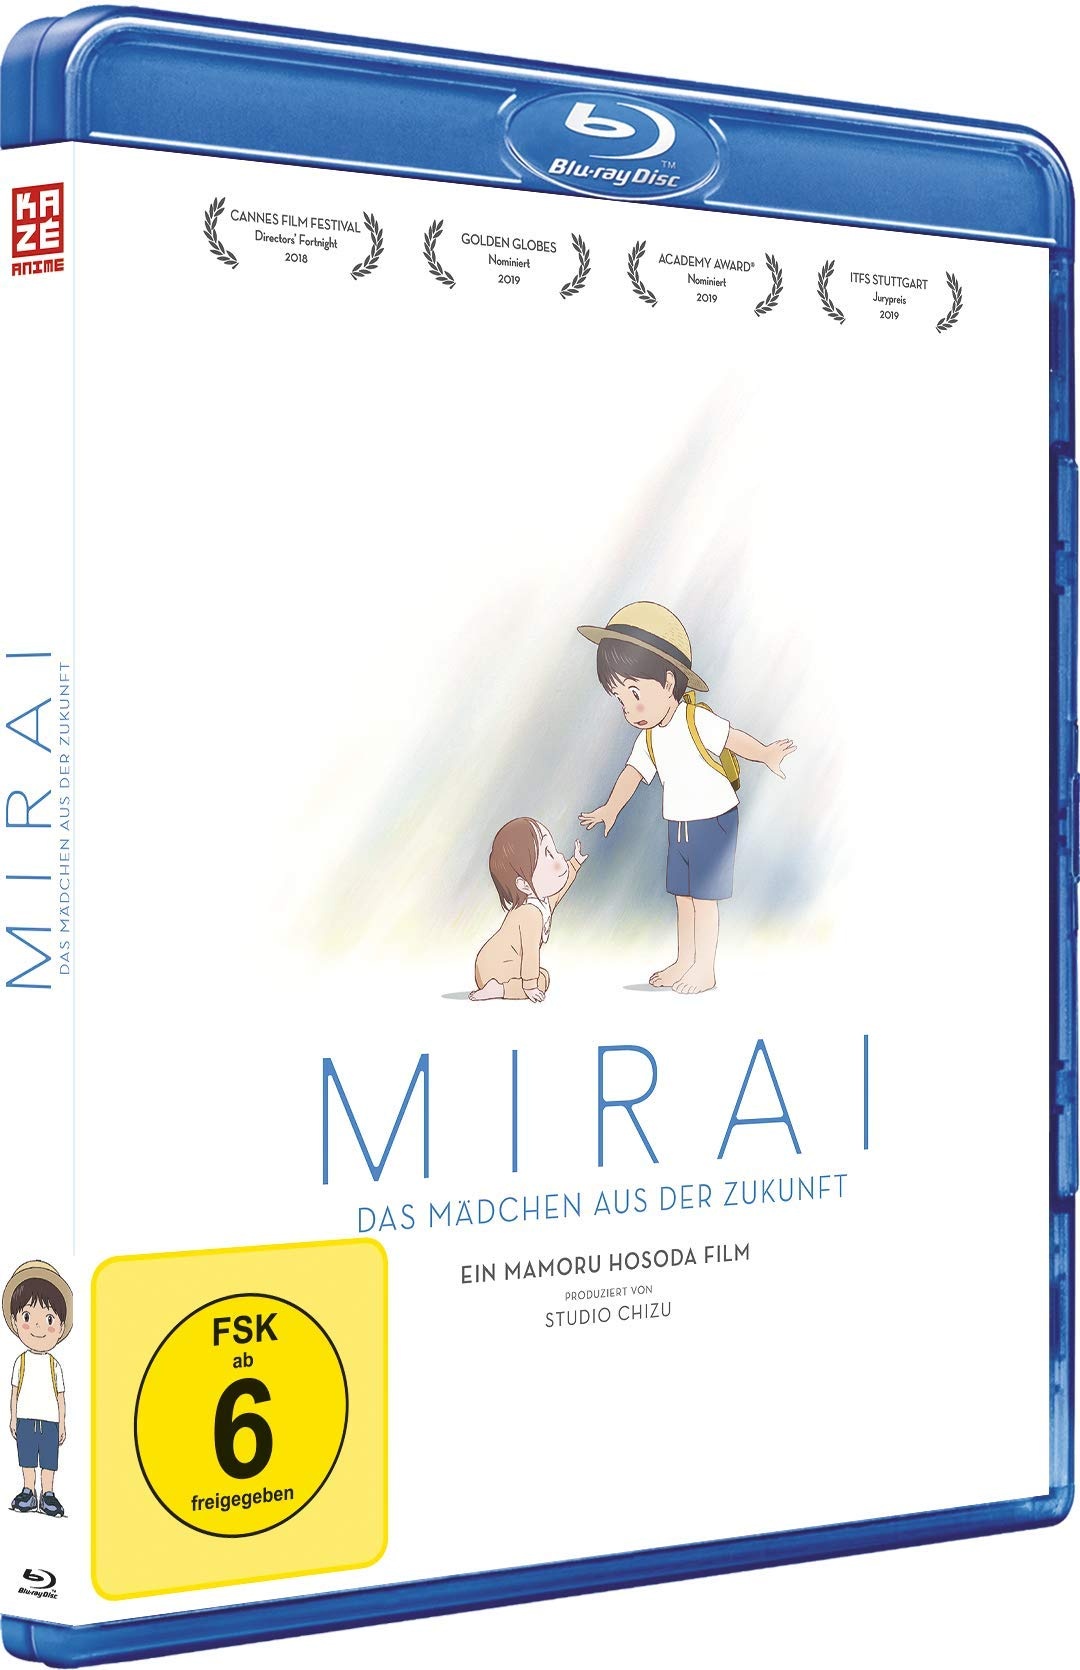 Mirai - Das Mädchen aus der Zukunft - [Blu-ray] (Neu differenzbesteuert)